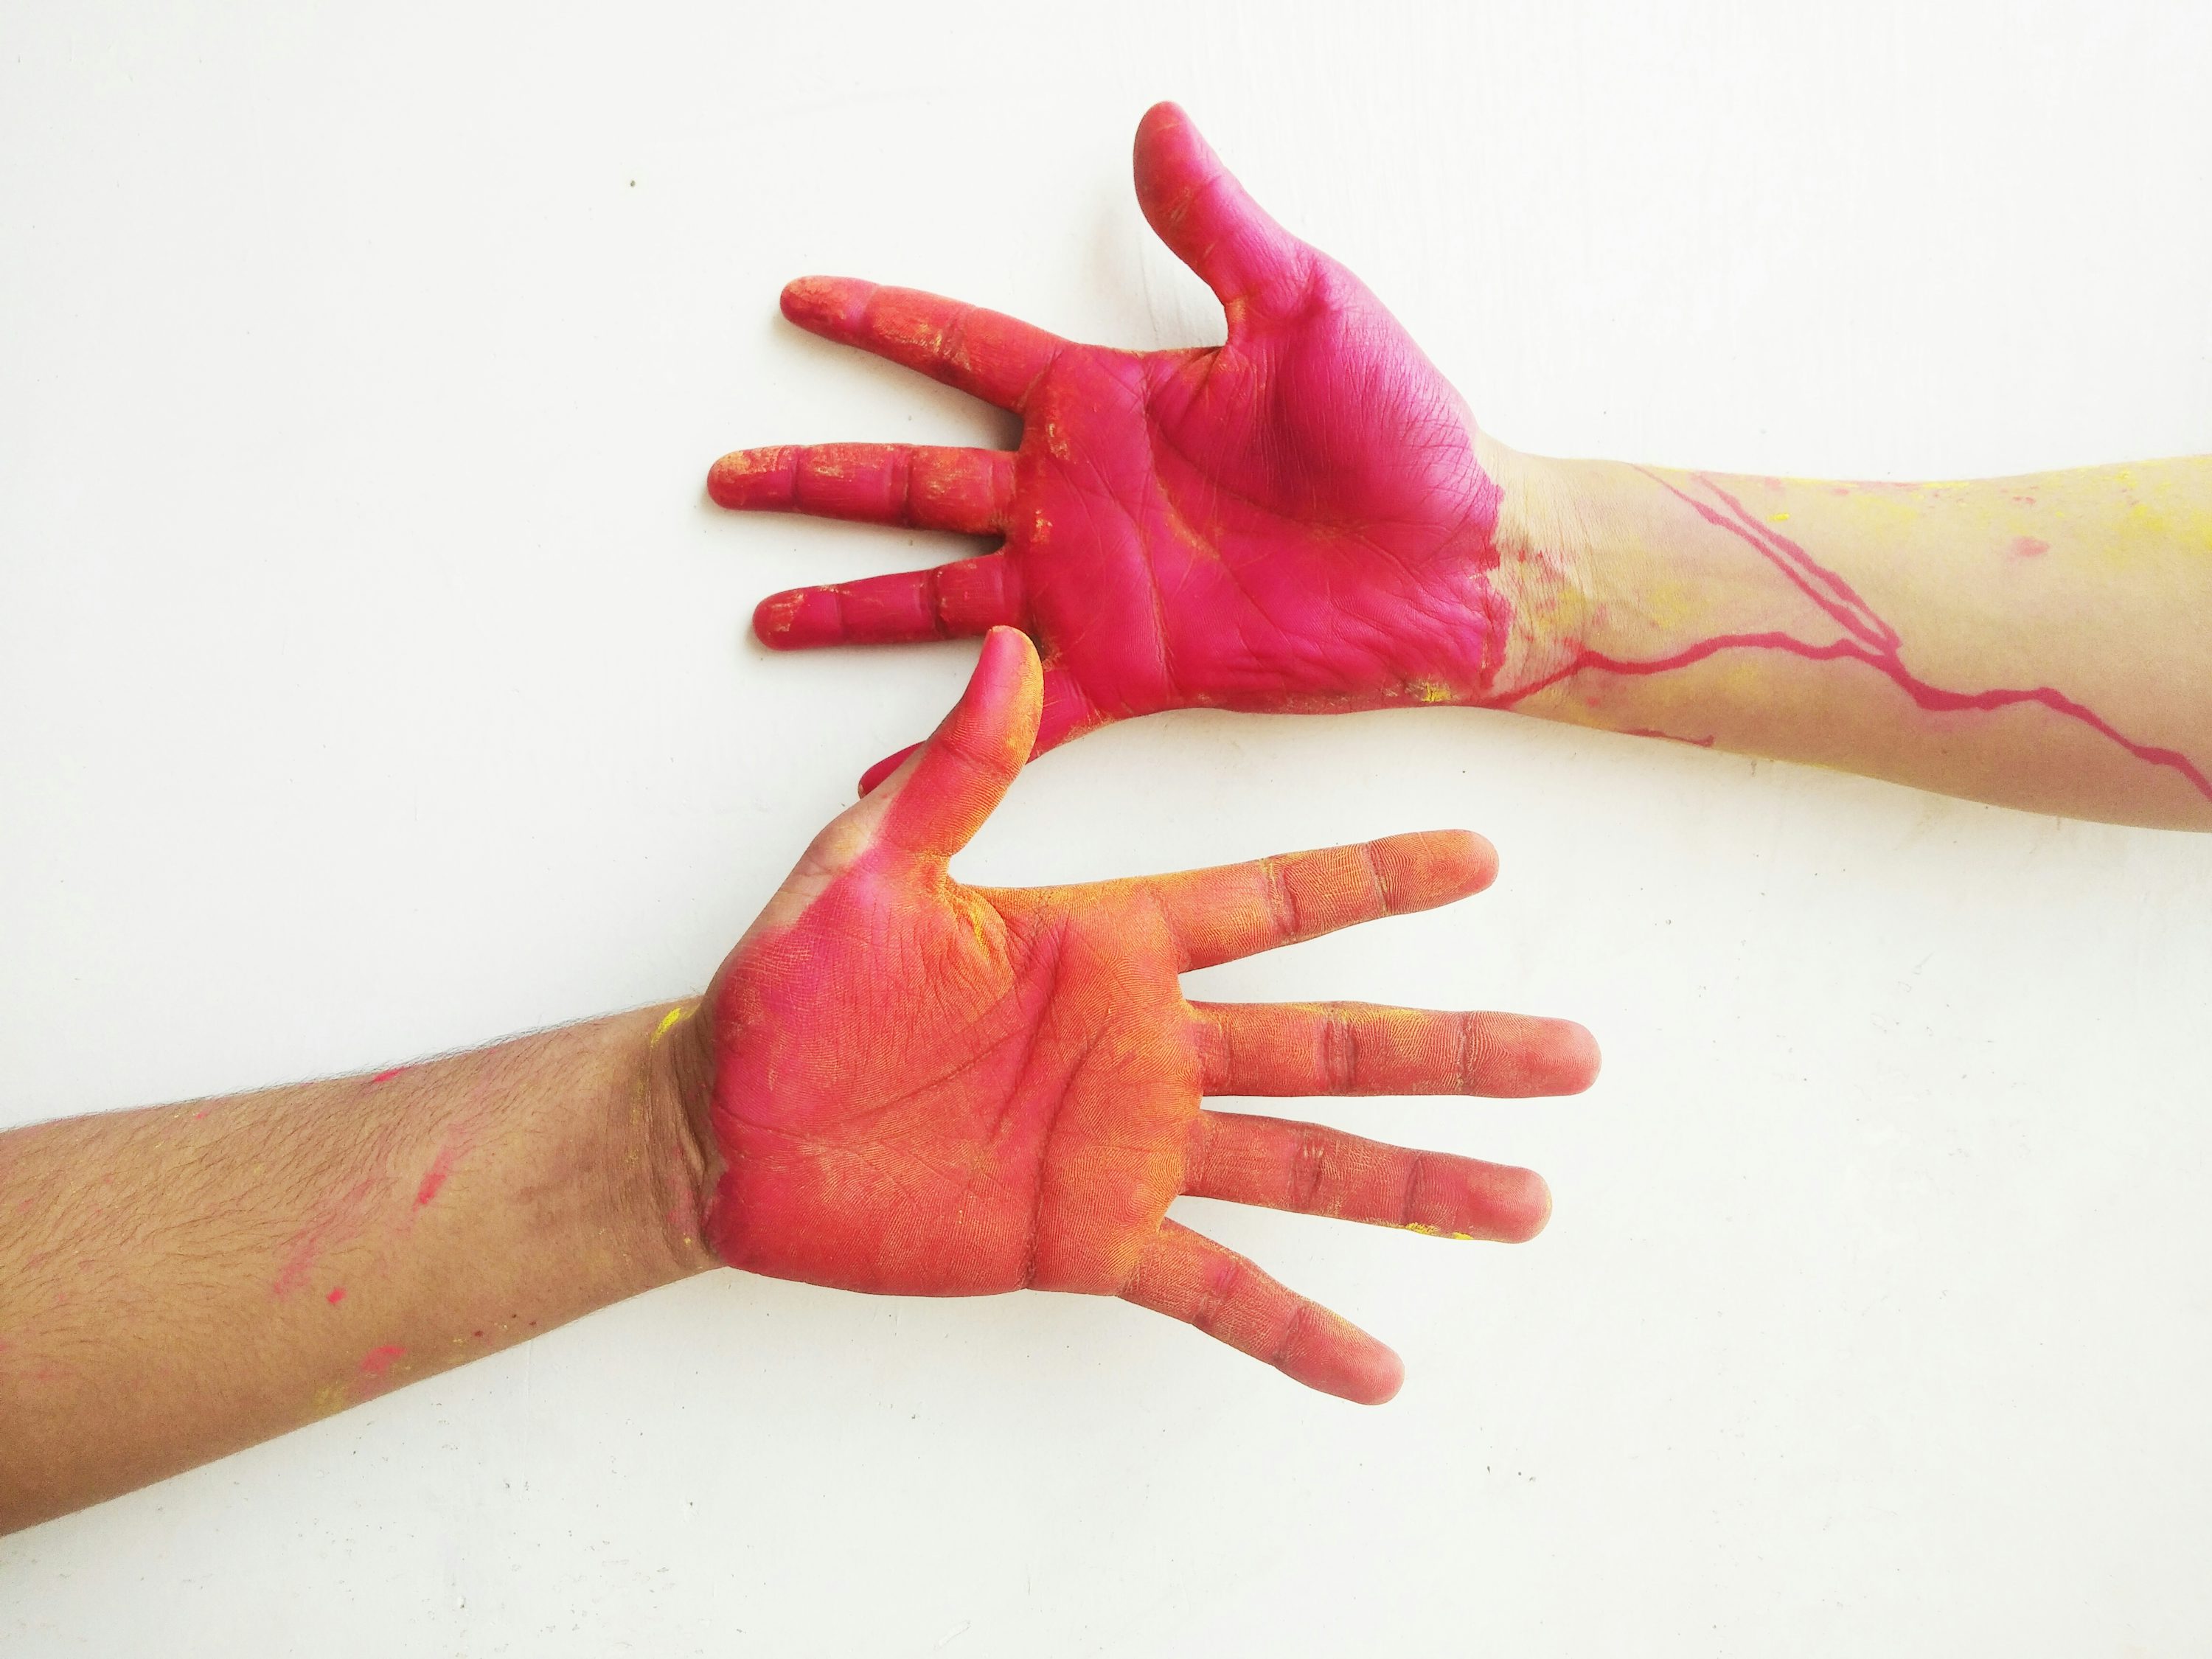 zwei Hände mit roter und gelber Farbe darauf